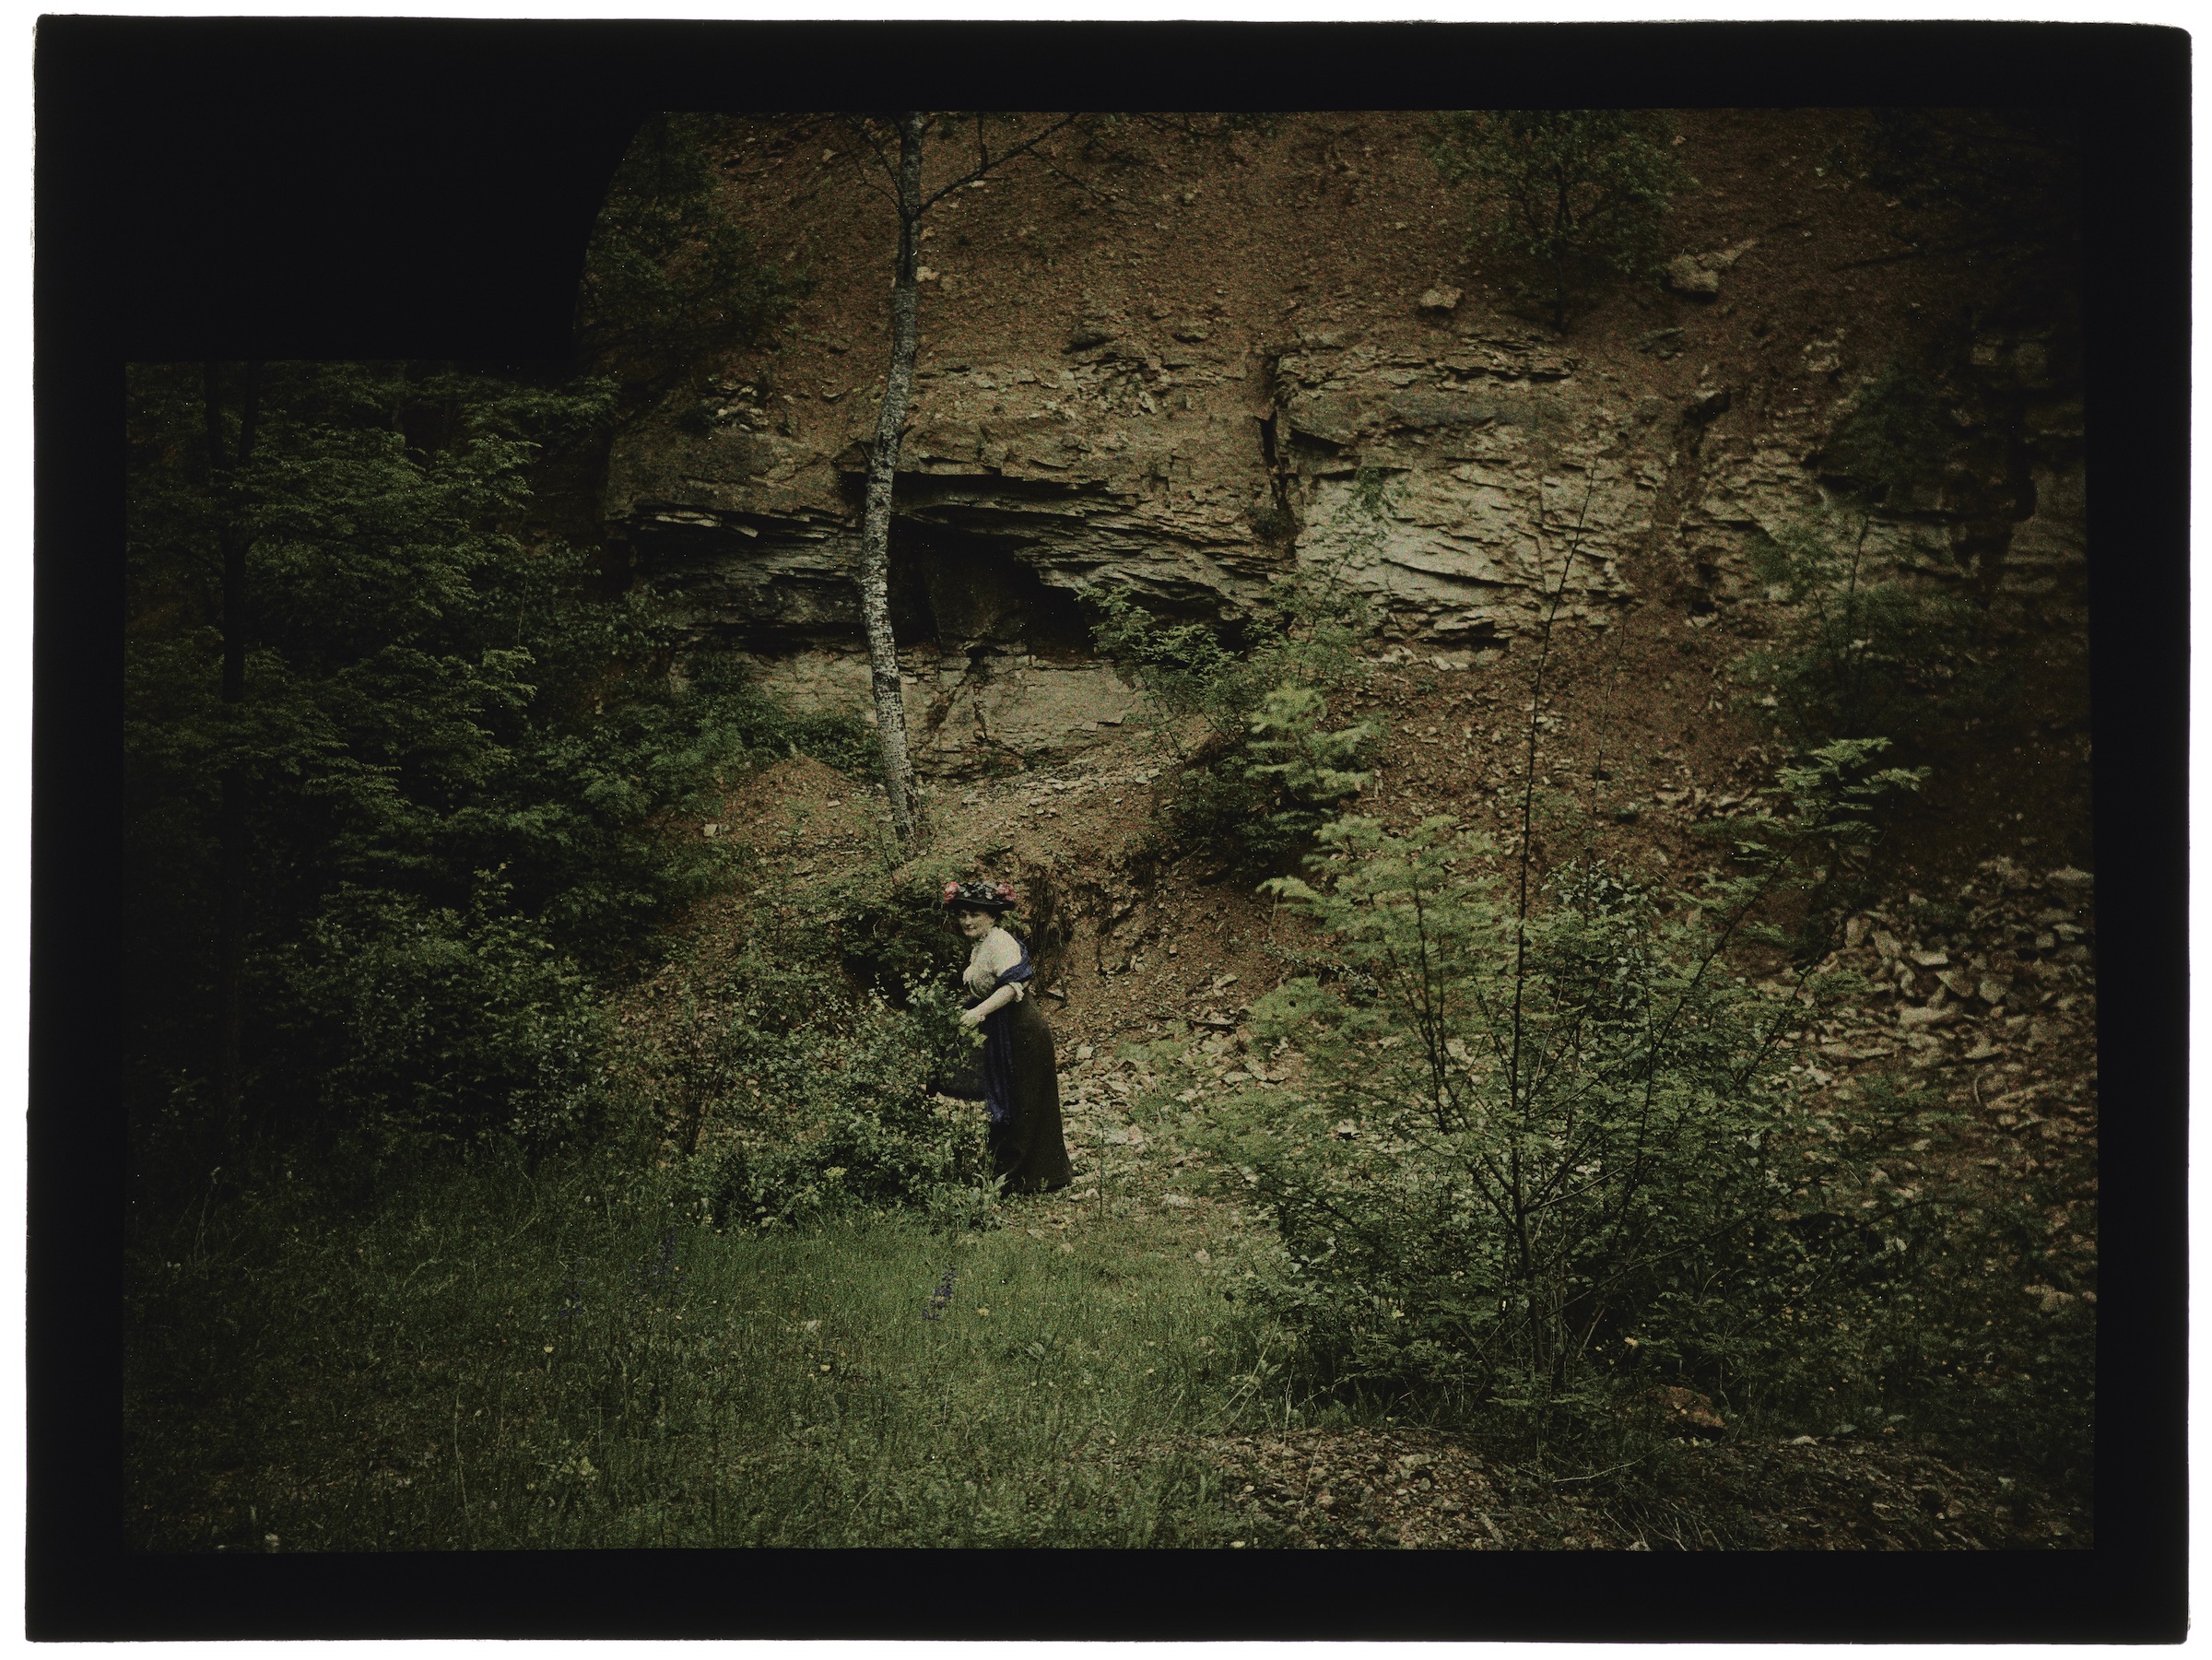 Femme(s) dans la forêt (avec de hautes buttes de terre) ou la campagne